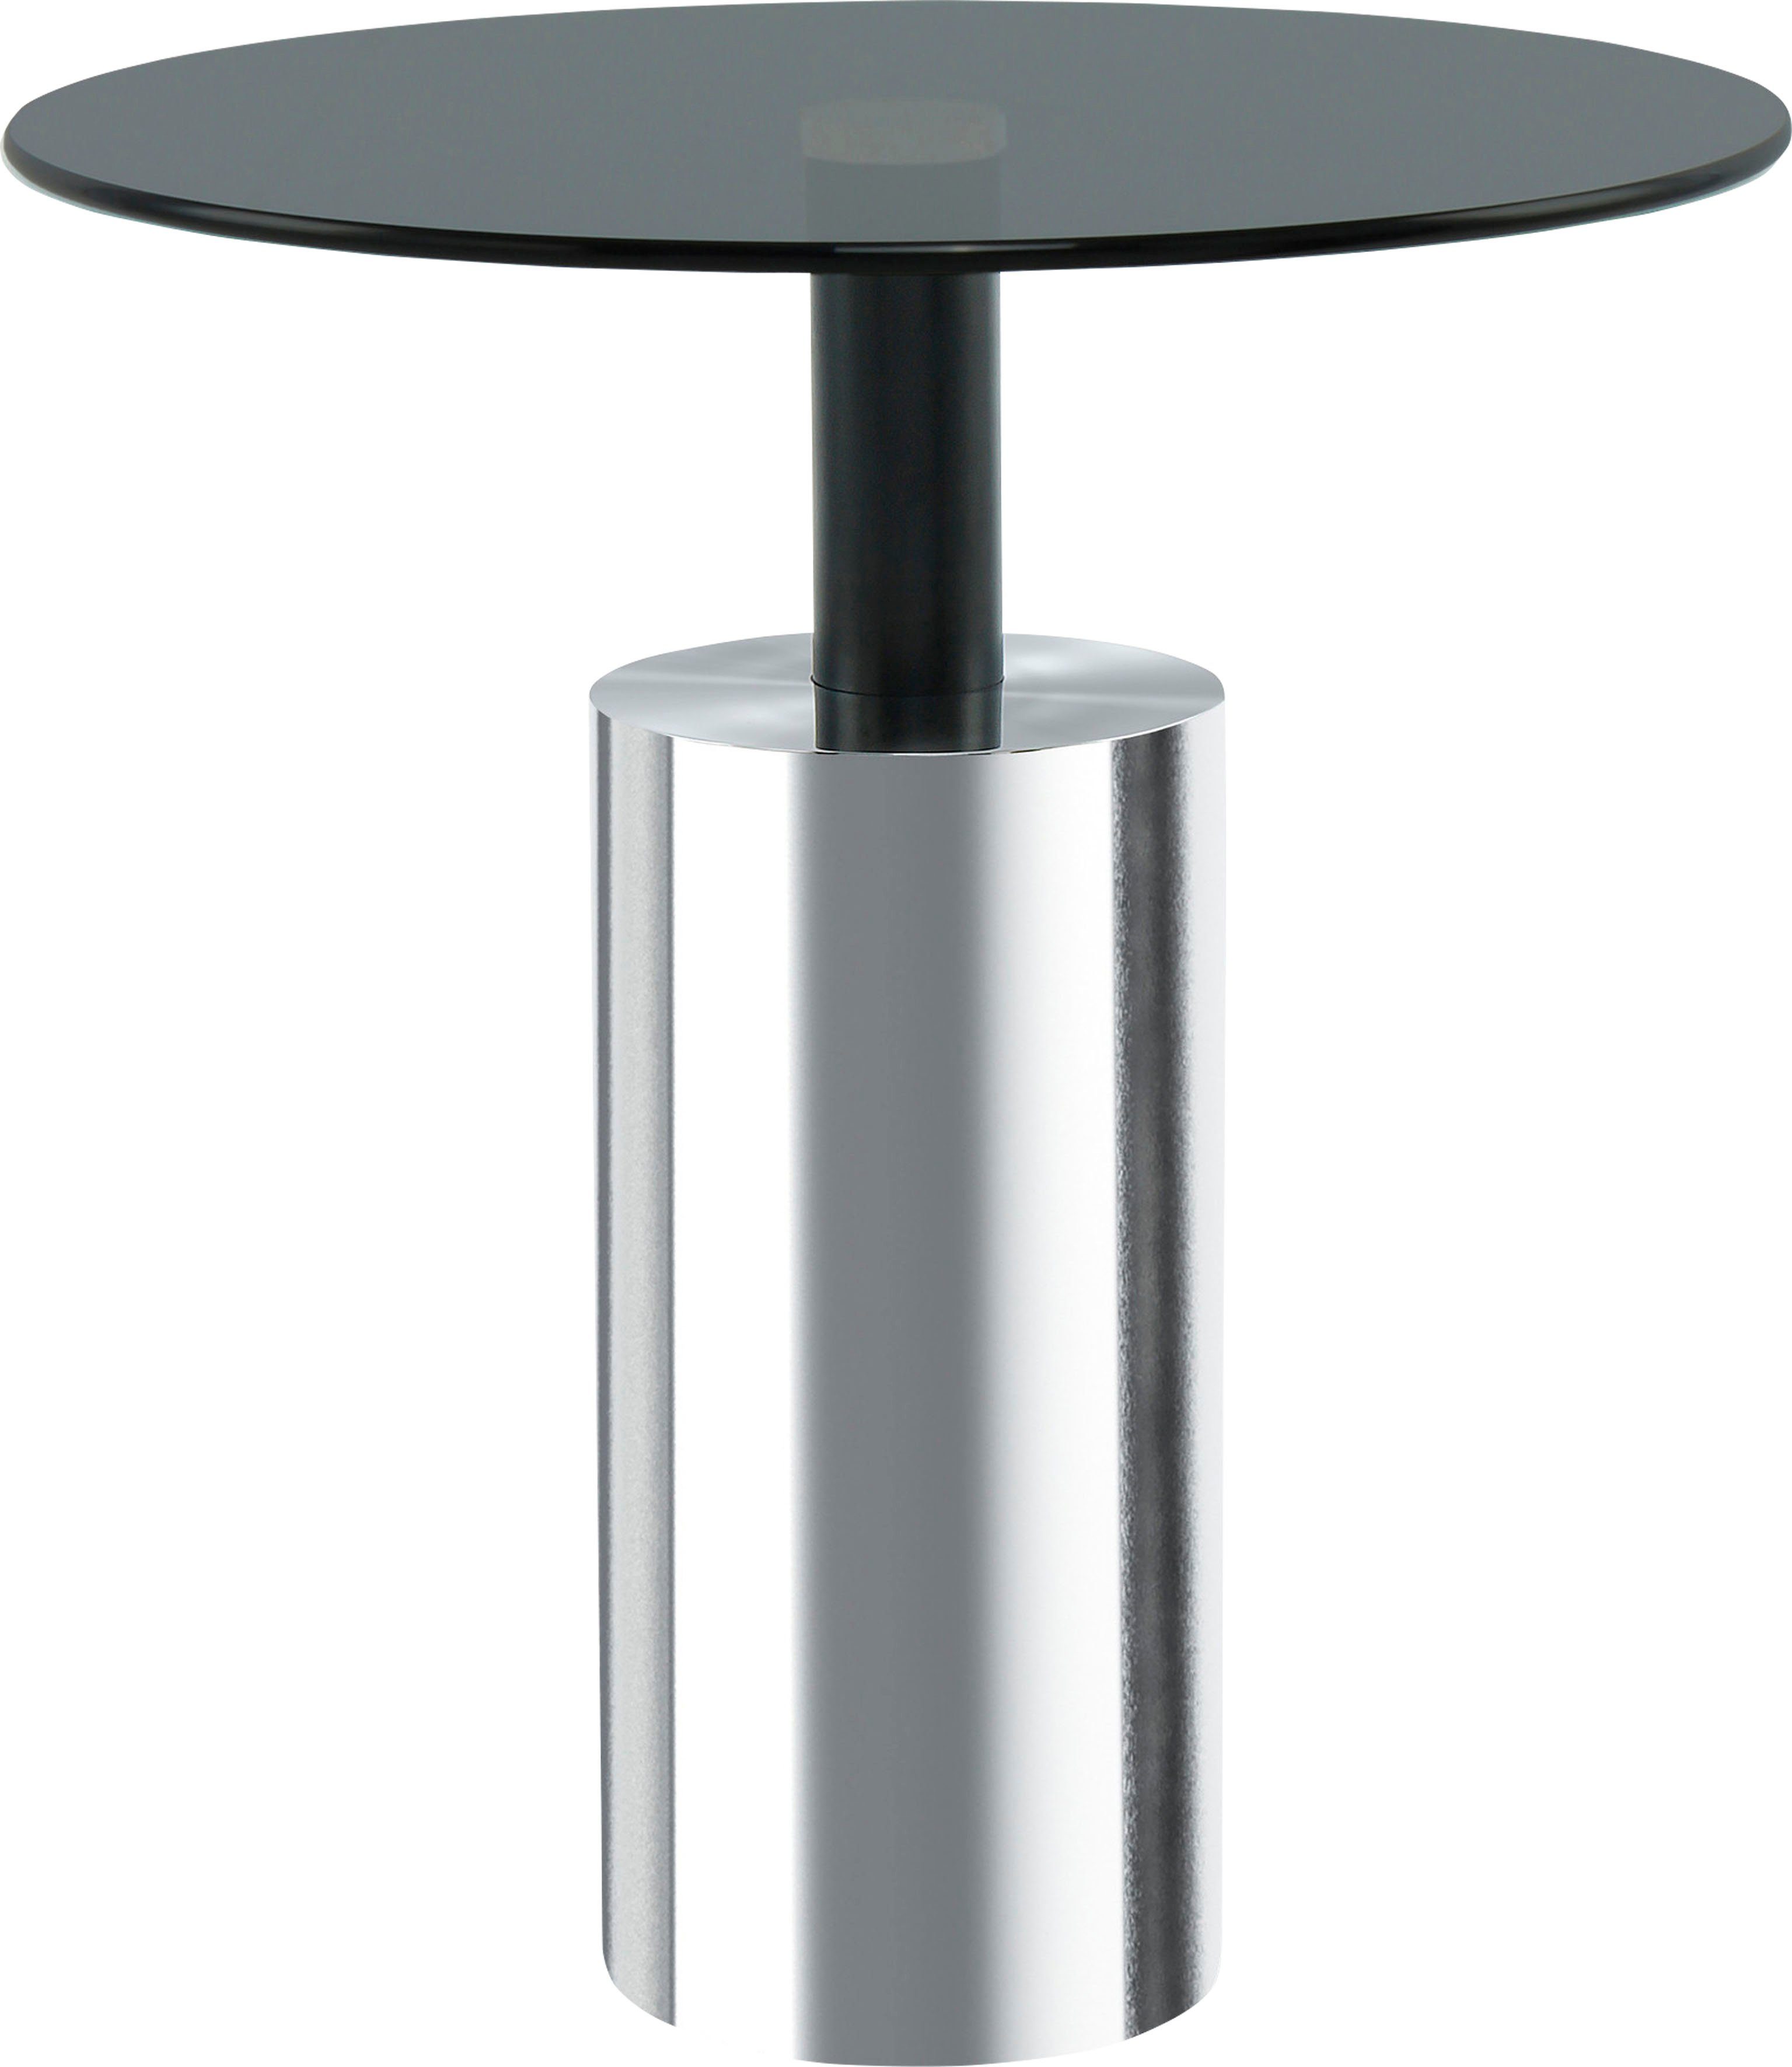 Kayoom Beistelltisch Beistelltisch Rosanna 525, Runde Tischplatte, edles Design, zeitlose Farben, Sockel: Ø 15 cm grau | silber